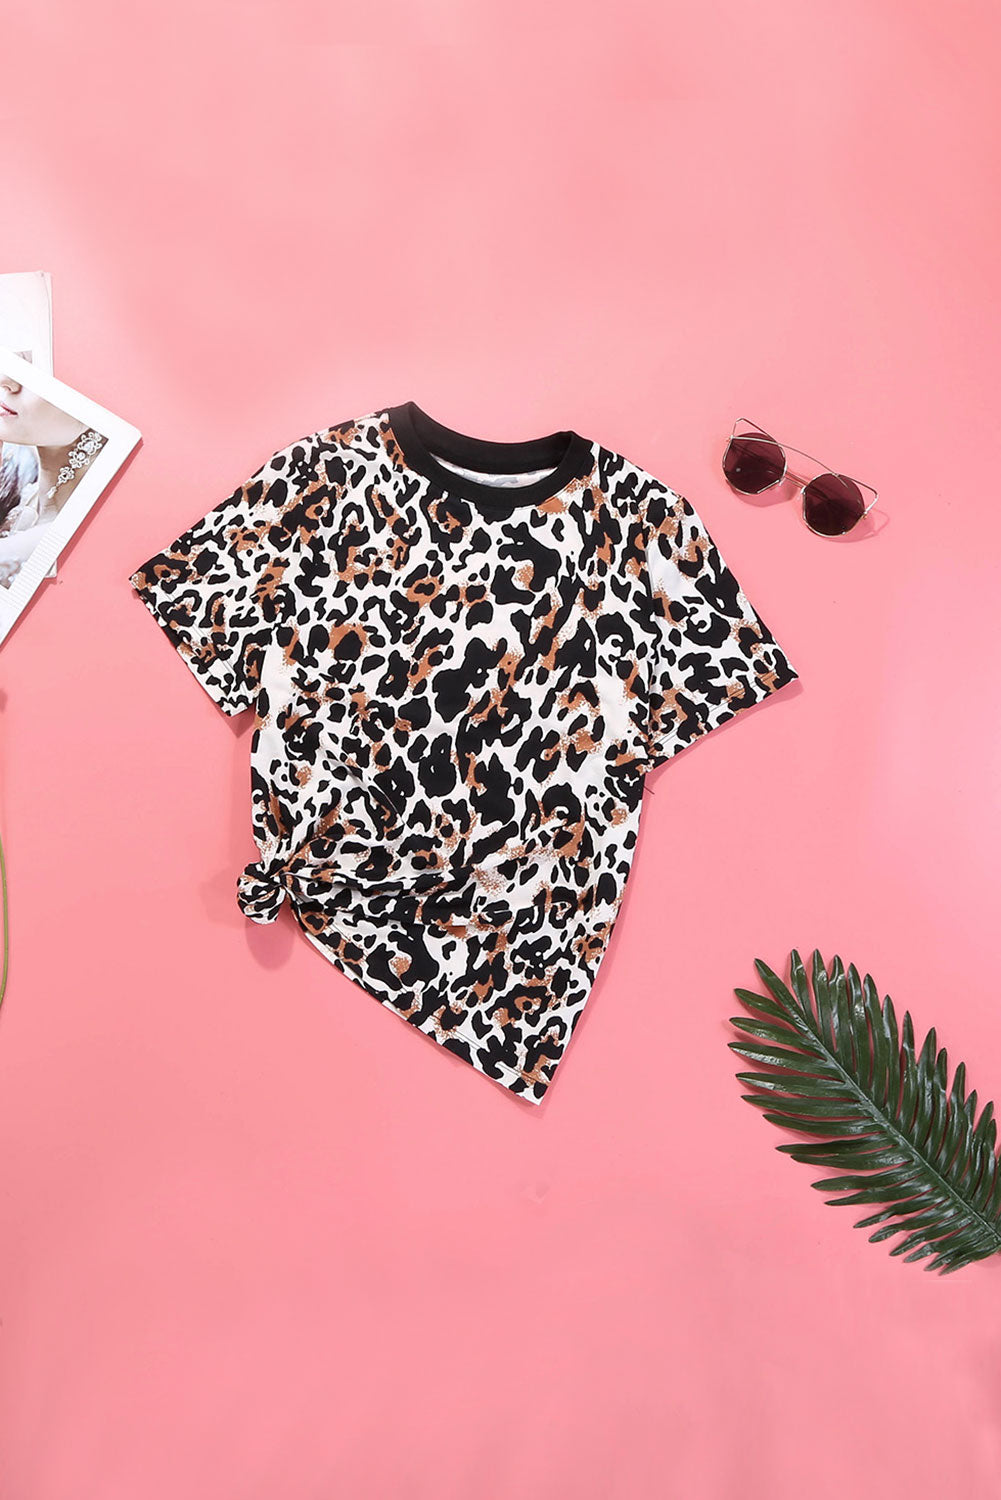 Trendsi Cupid Beauty Supplies Woman's T-Shirts Leopard Print T-Shirt